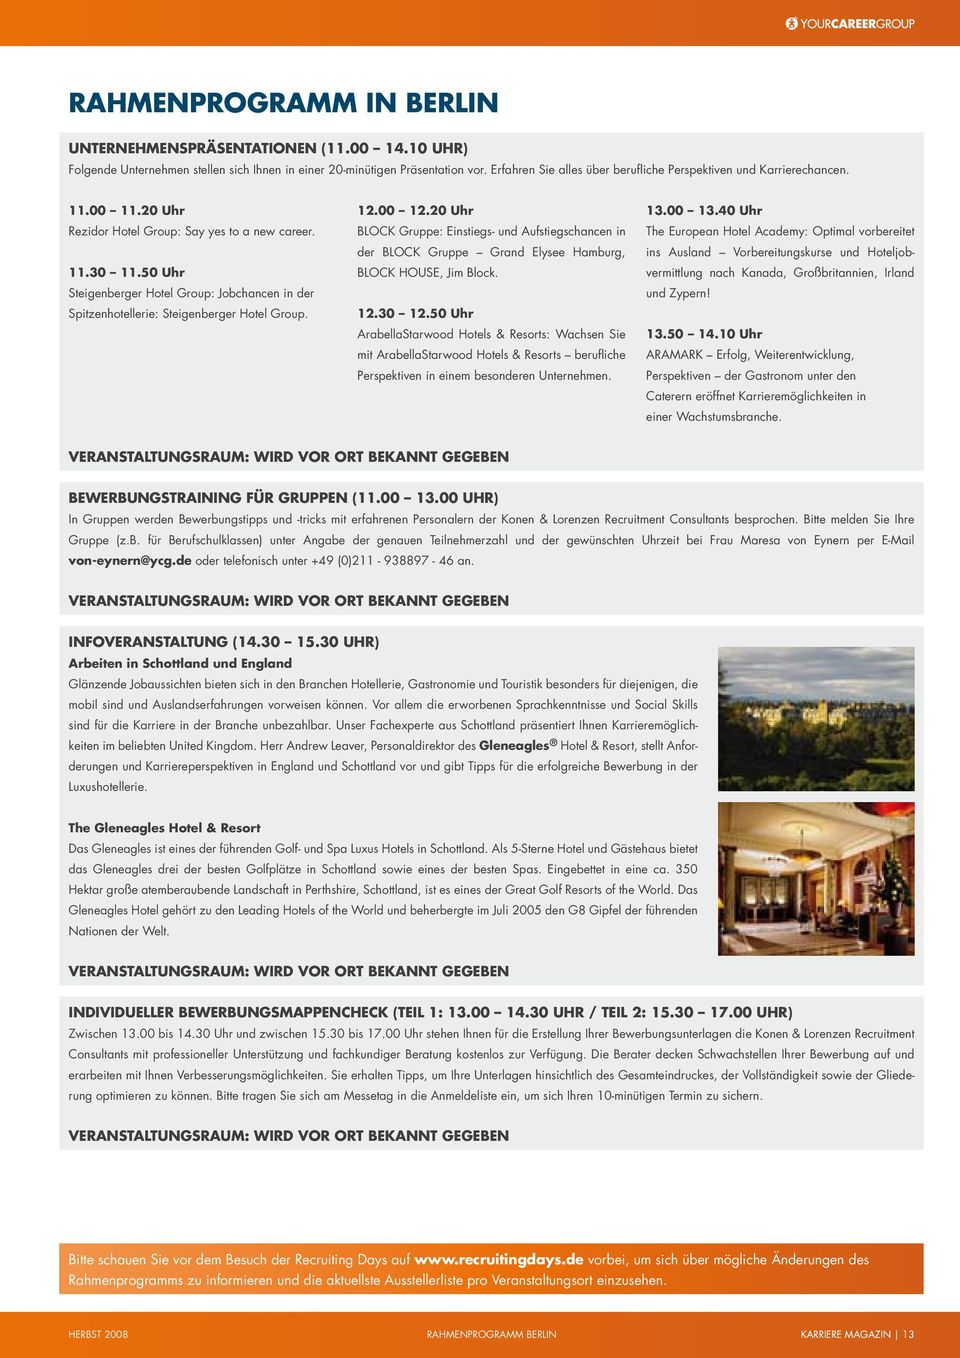 50 Uhr Steigenberger Hotel Group: Jobchancen in der Spitzenhotellerie: Steigenberger Hotel Group. 12.00 12.